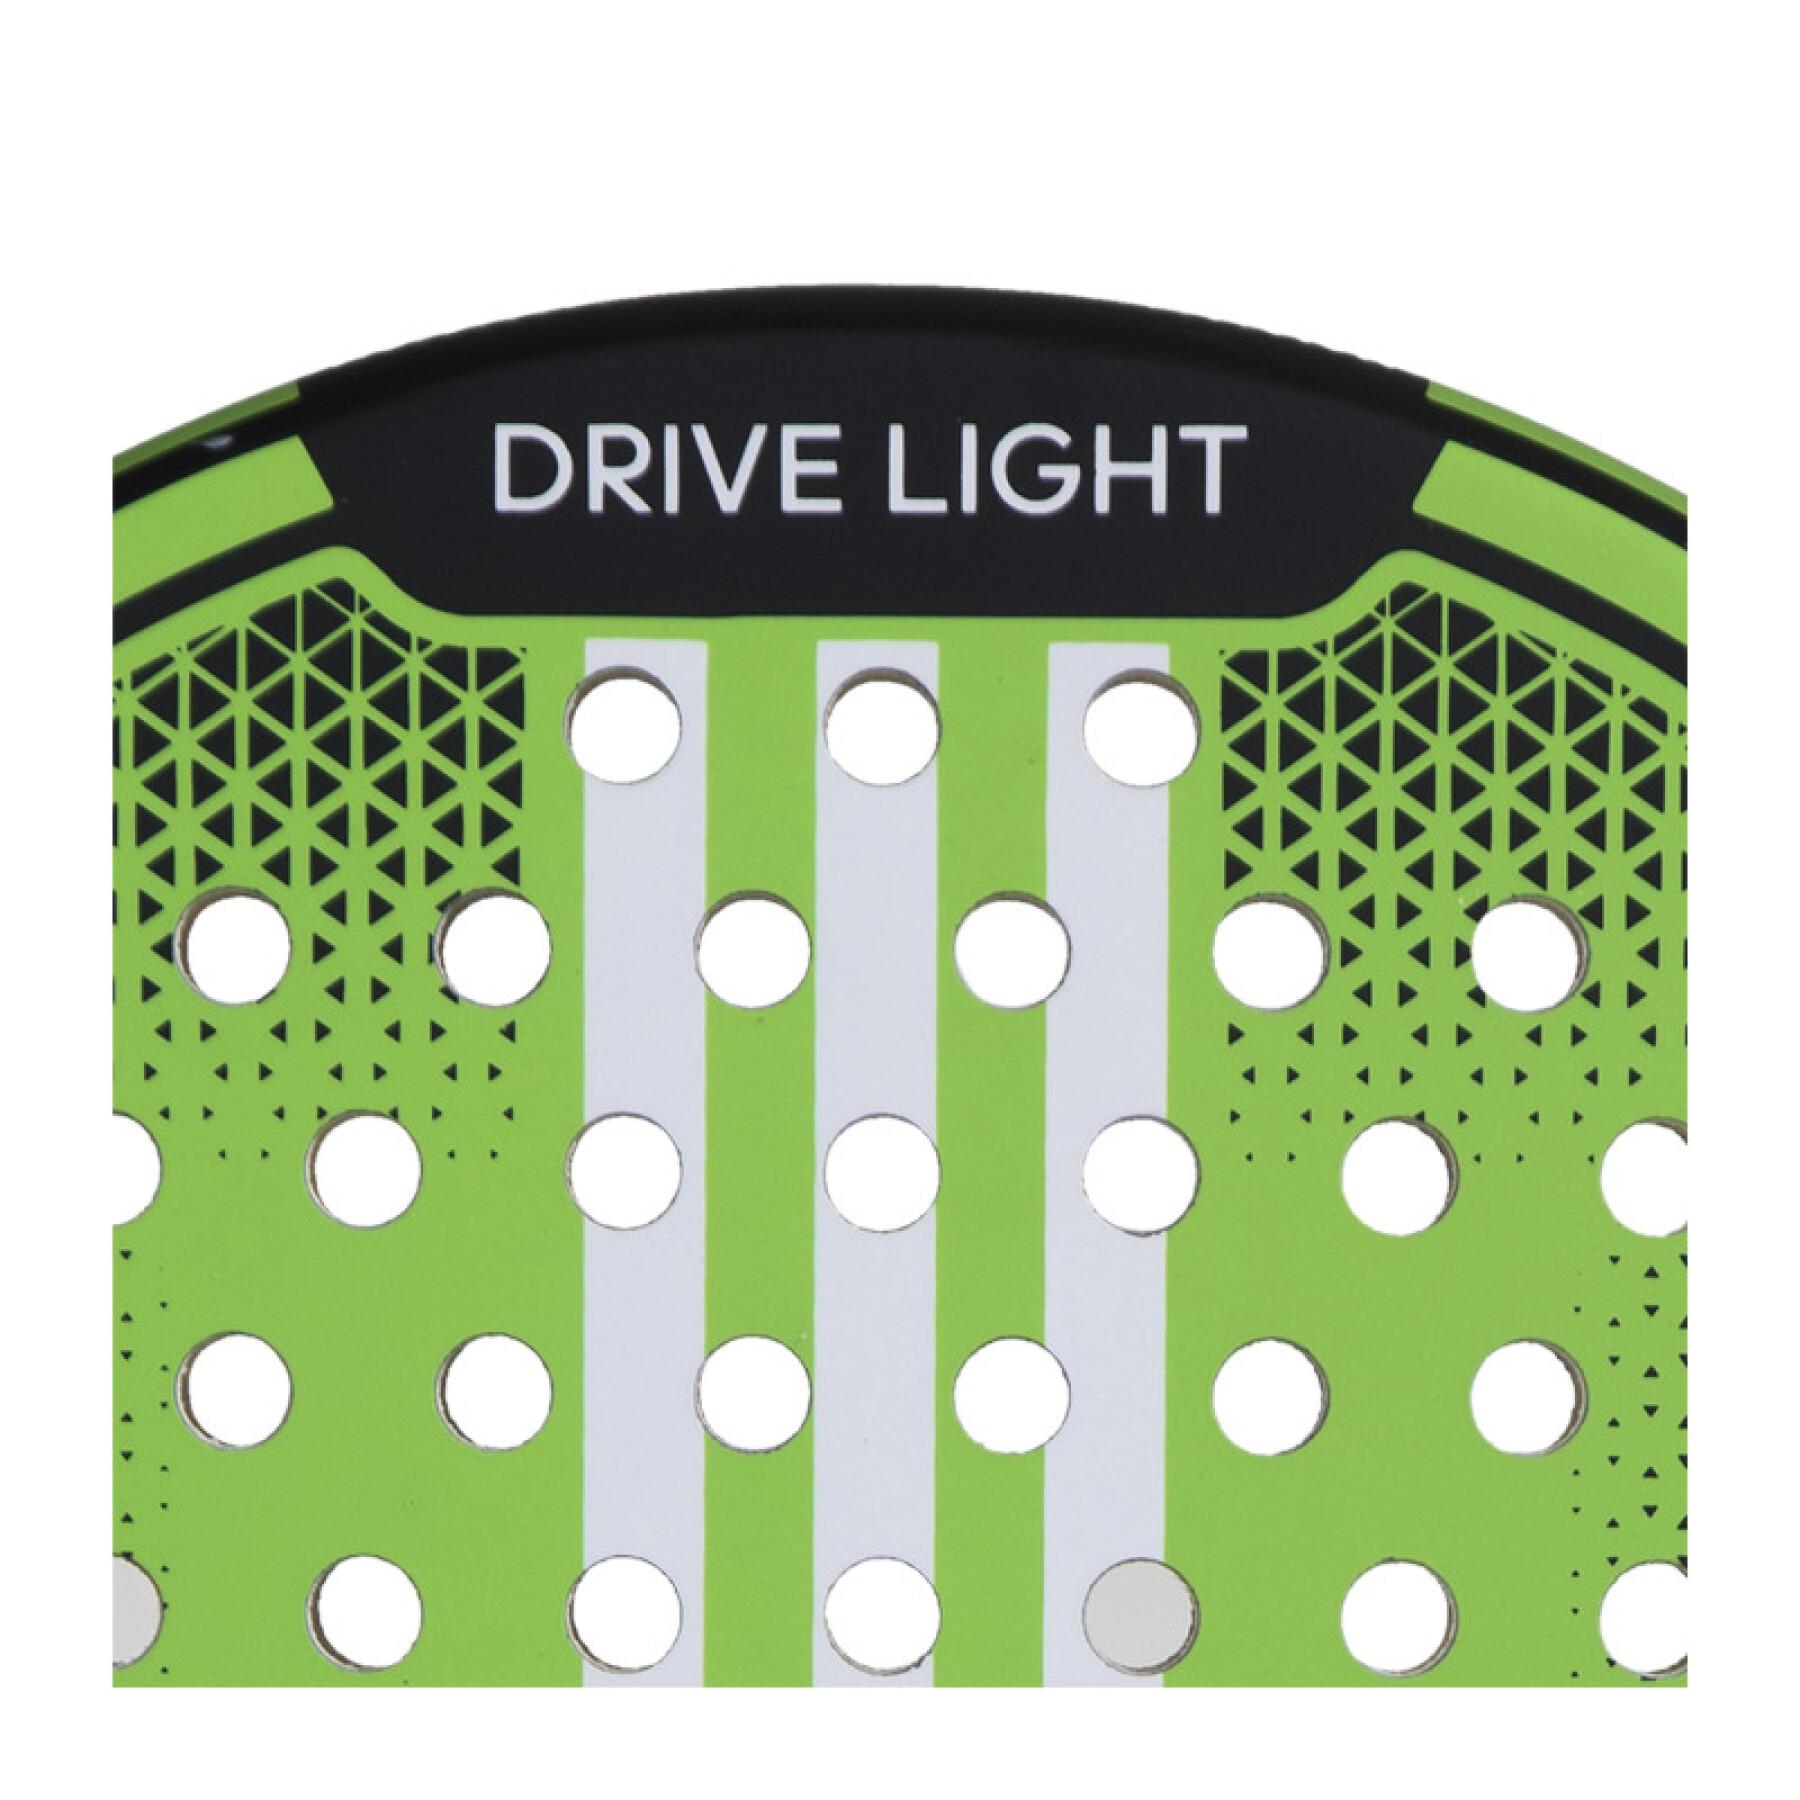 Padel-Schläger adidas Drive Light 3.2